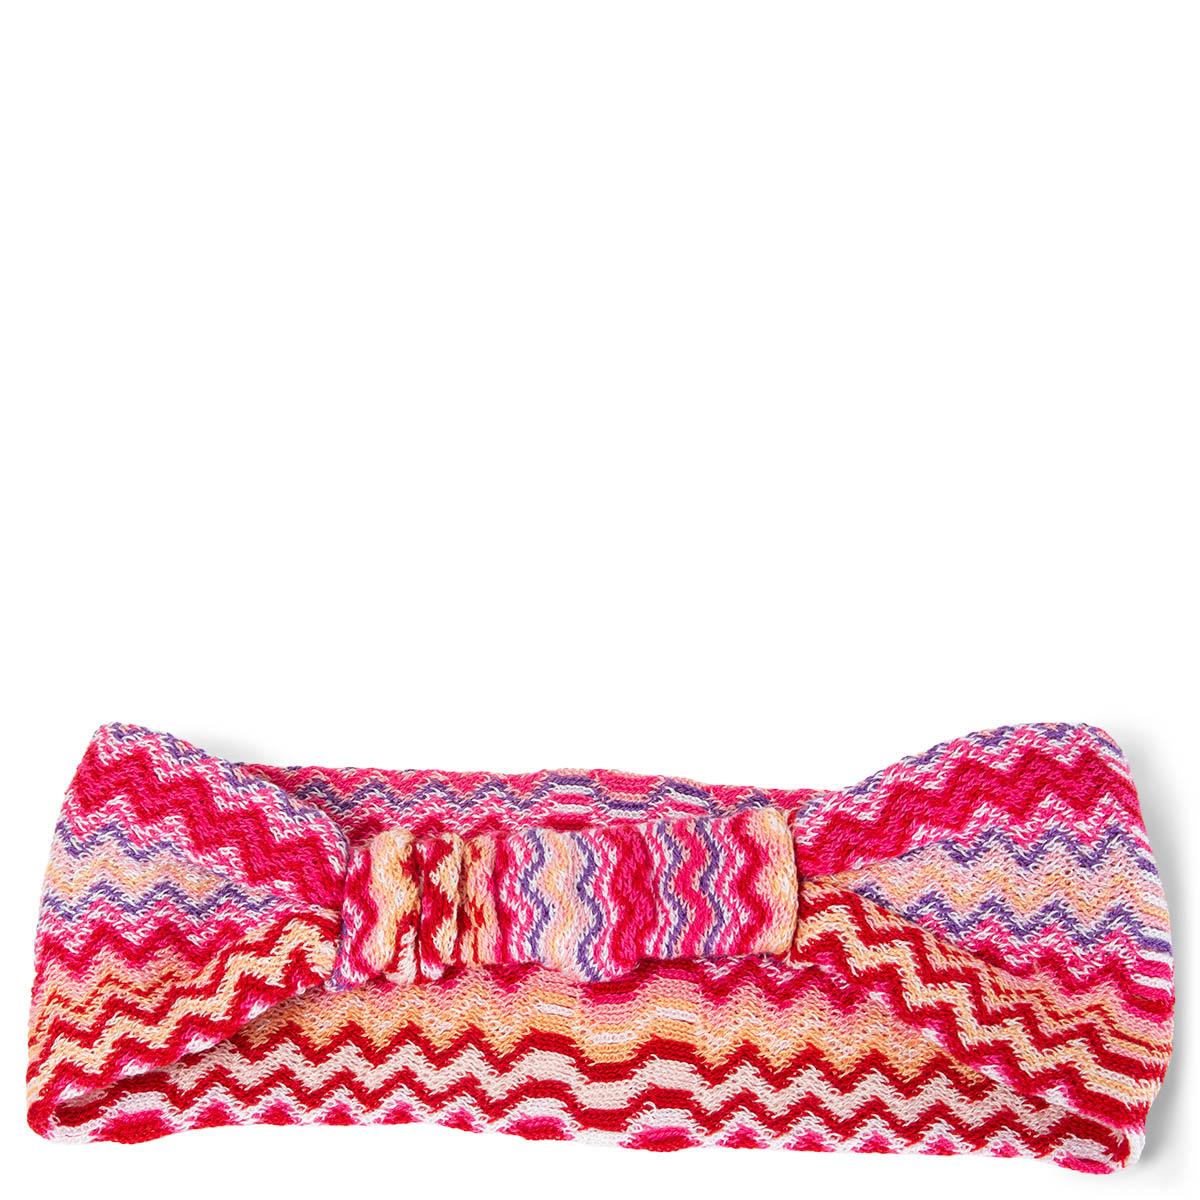 100% authentisches Missoni Zickzack-Stirnband in rosa, lachsfarben, rot, lila und weiß aus Wolle (50%) und Acryl (50%). Elastisches Band auf dem Rücken. Wurde nie getragen und ist in praktisch neuem Zustand. 

Alle unsere Angebote umfassen nur den